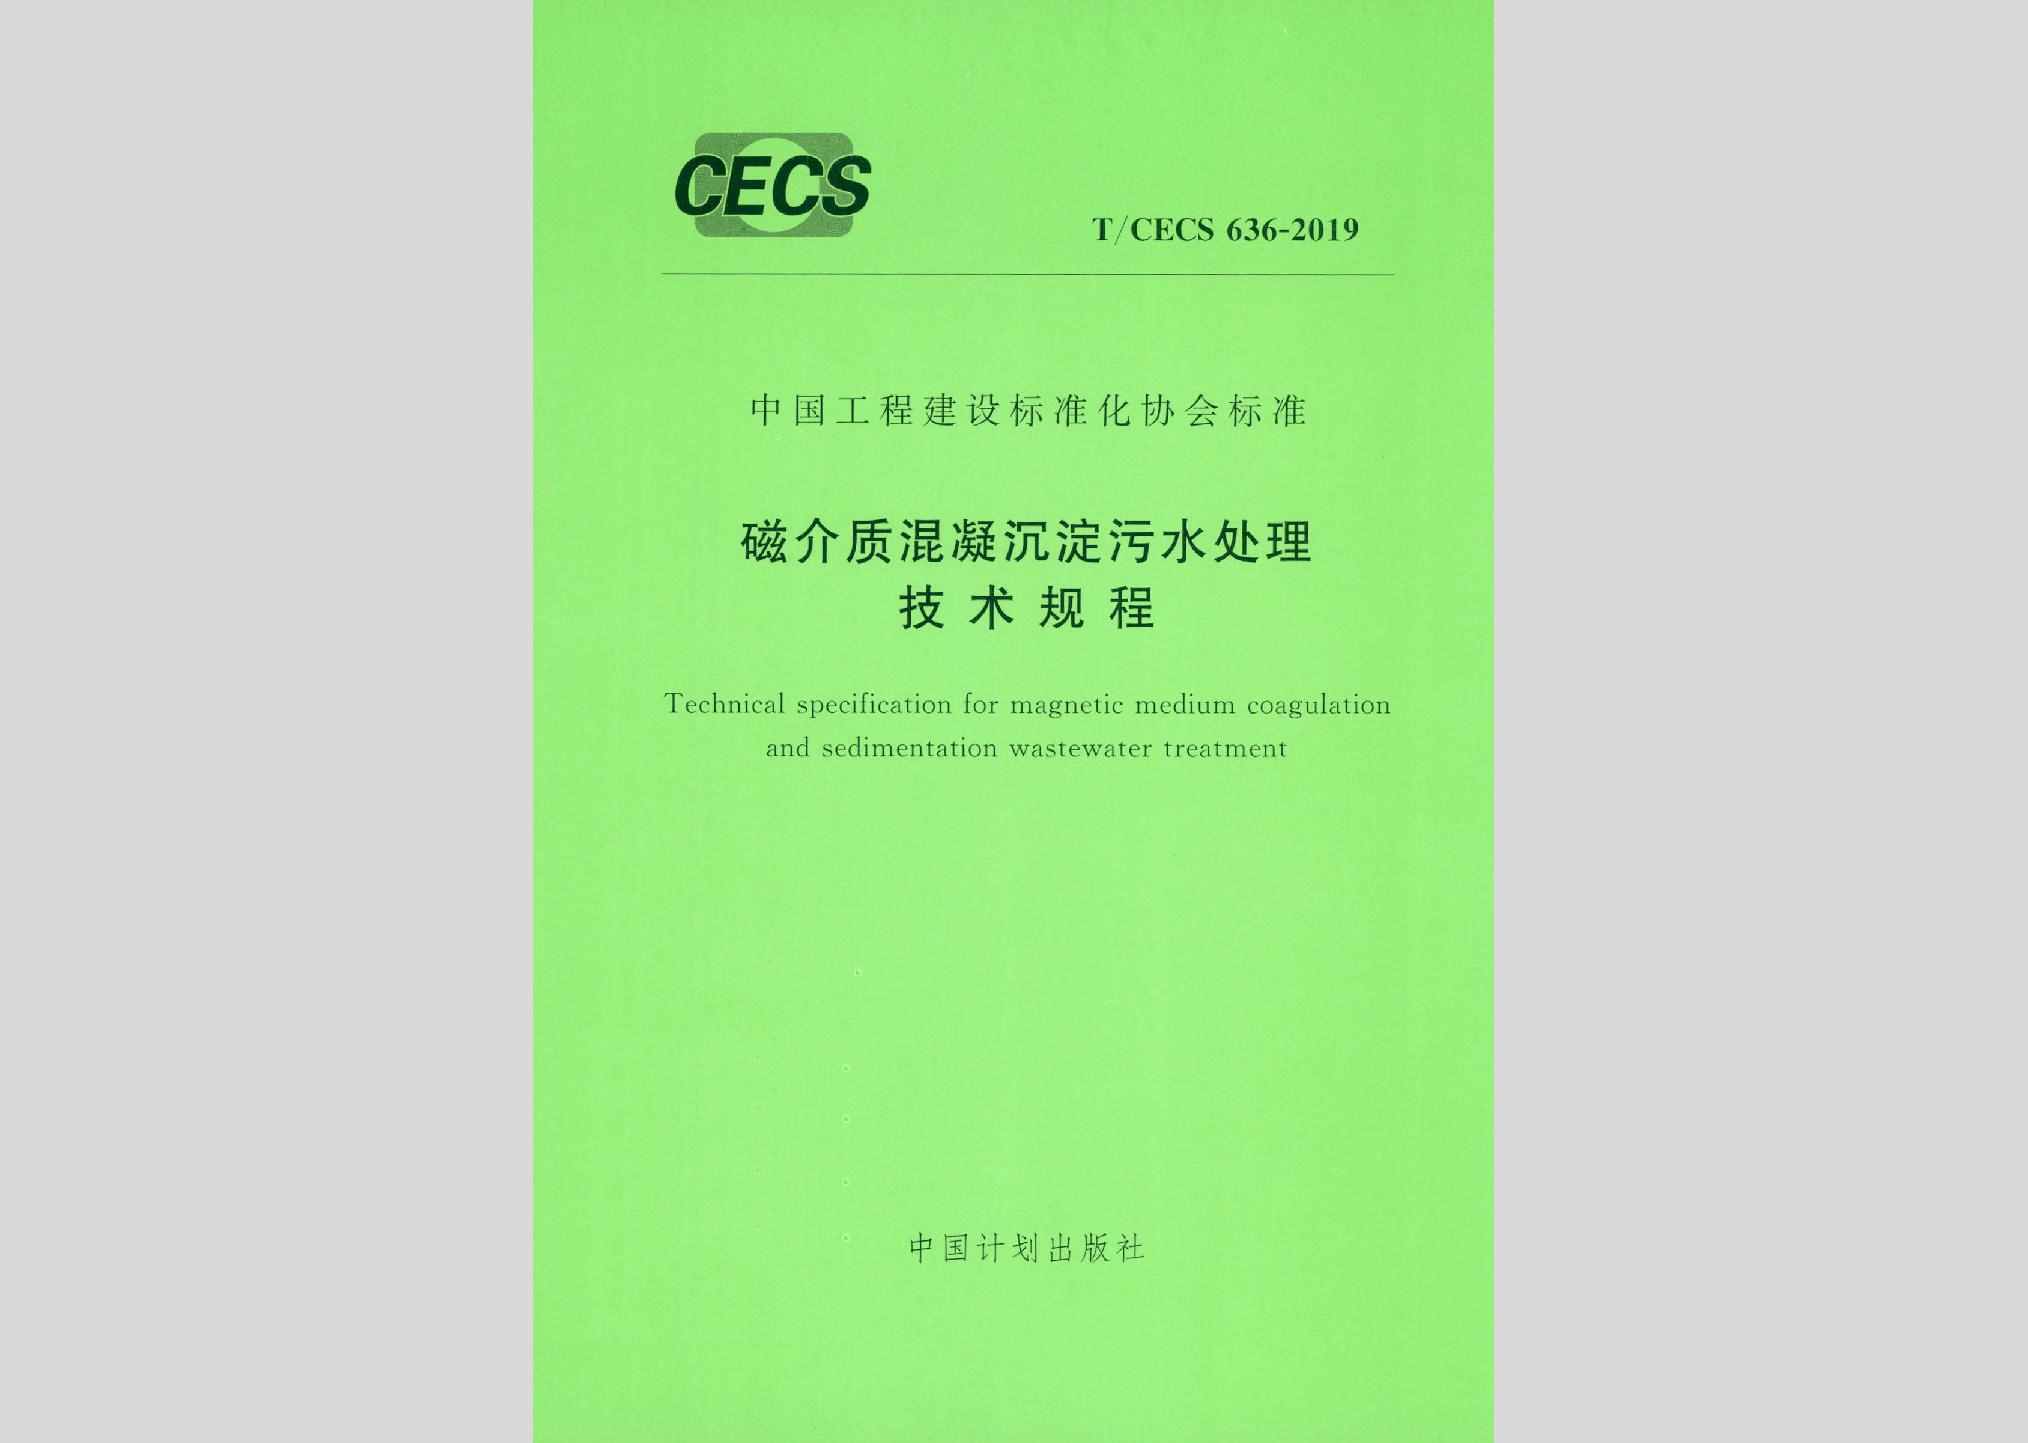 T/CECS636-2019：磁介质混凝沉淀污水处理技术规程